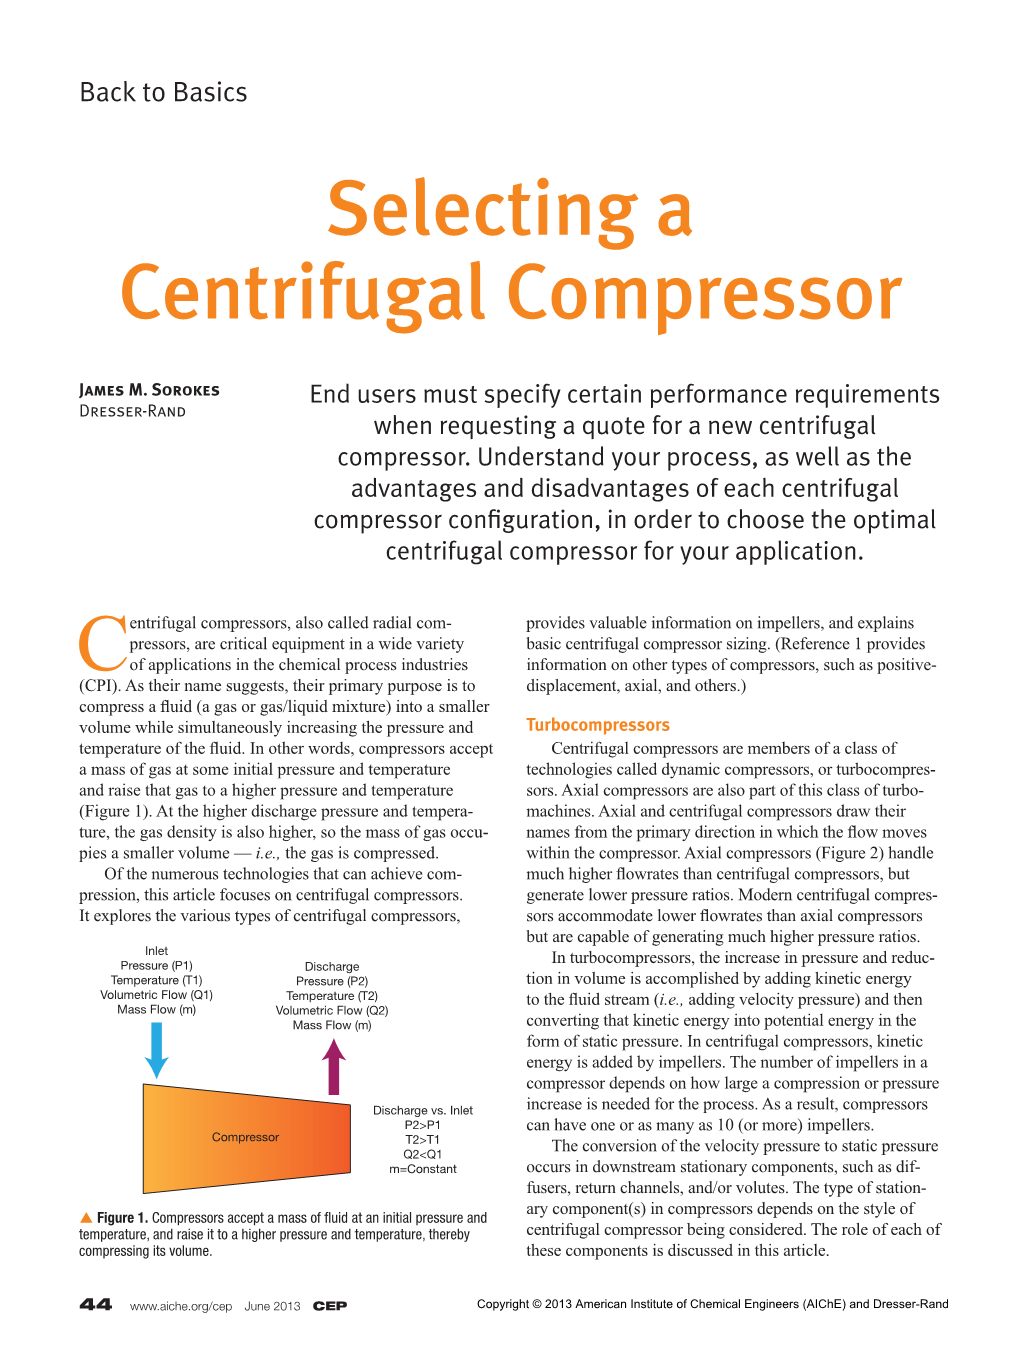 Selecting a Centrifugal Compressor